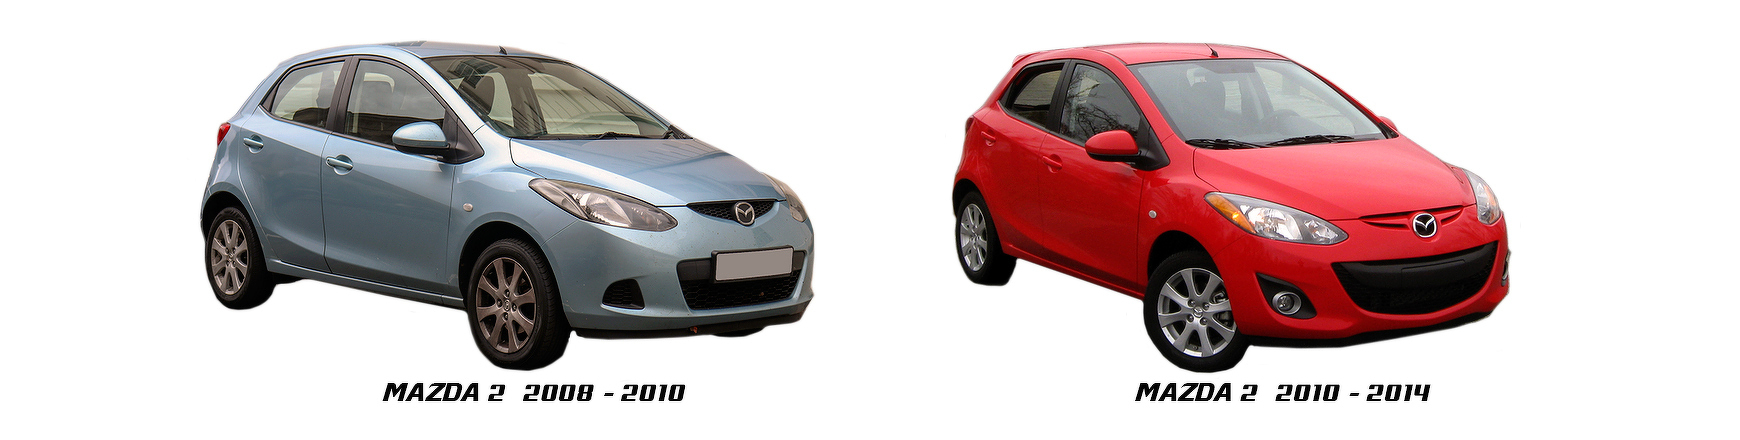 Piezas y Recambios de Mazda 2 de 2008 a 2014 | Visite Veramauto.es